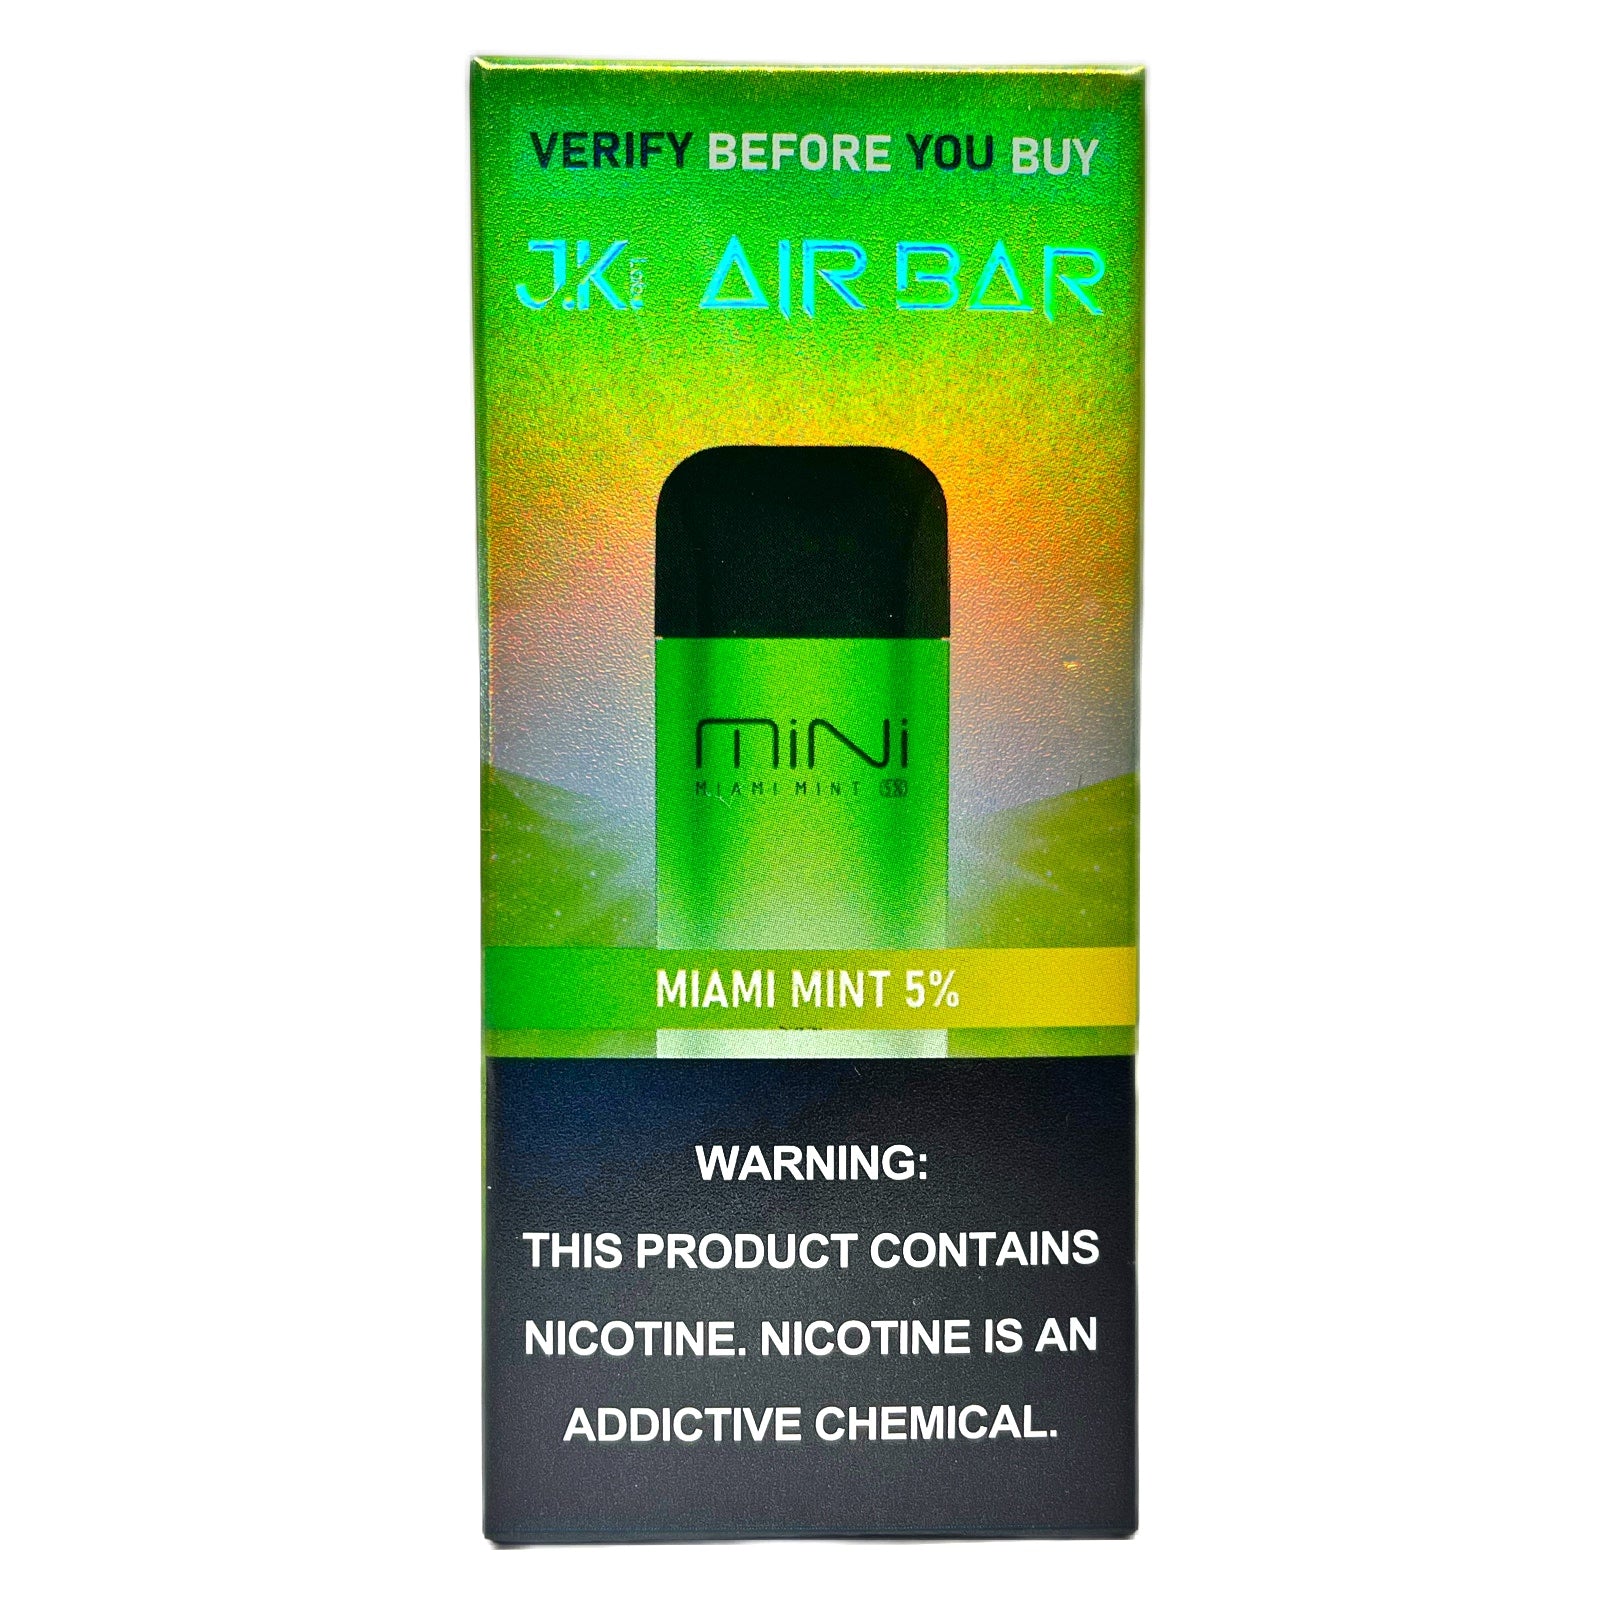     Air Bar Mini Flavor Miami Mint